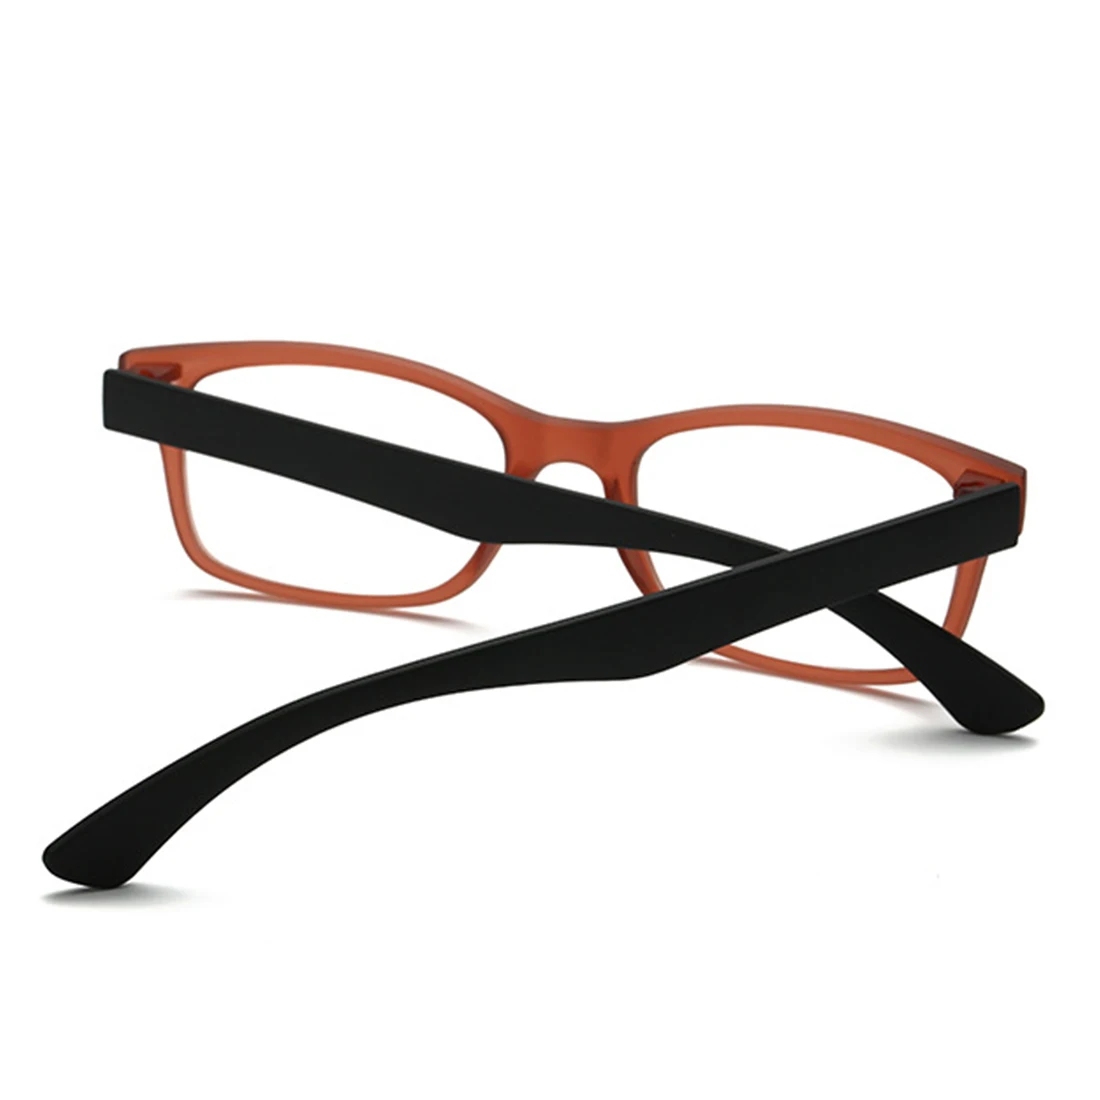 1 шт. 300/200/250/150 лупа для чтения унисекс очки увеличение для иглы чтения лупа Смотреть легкие очки